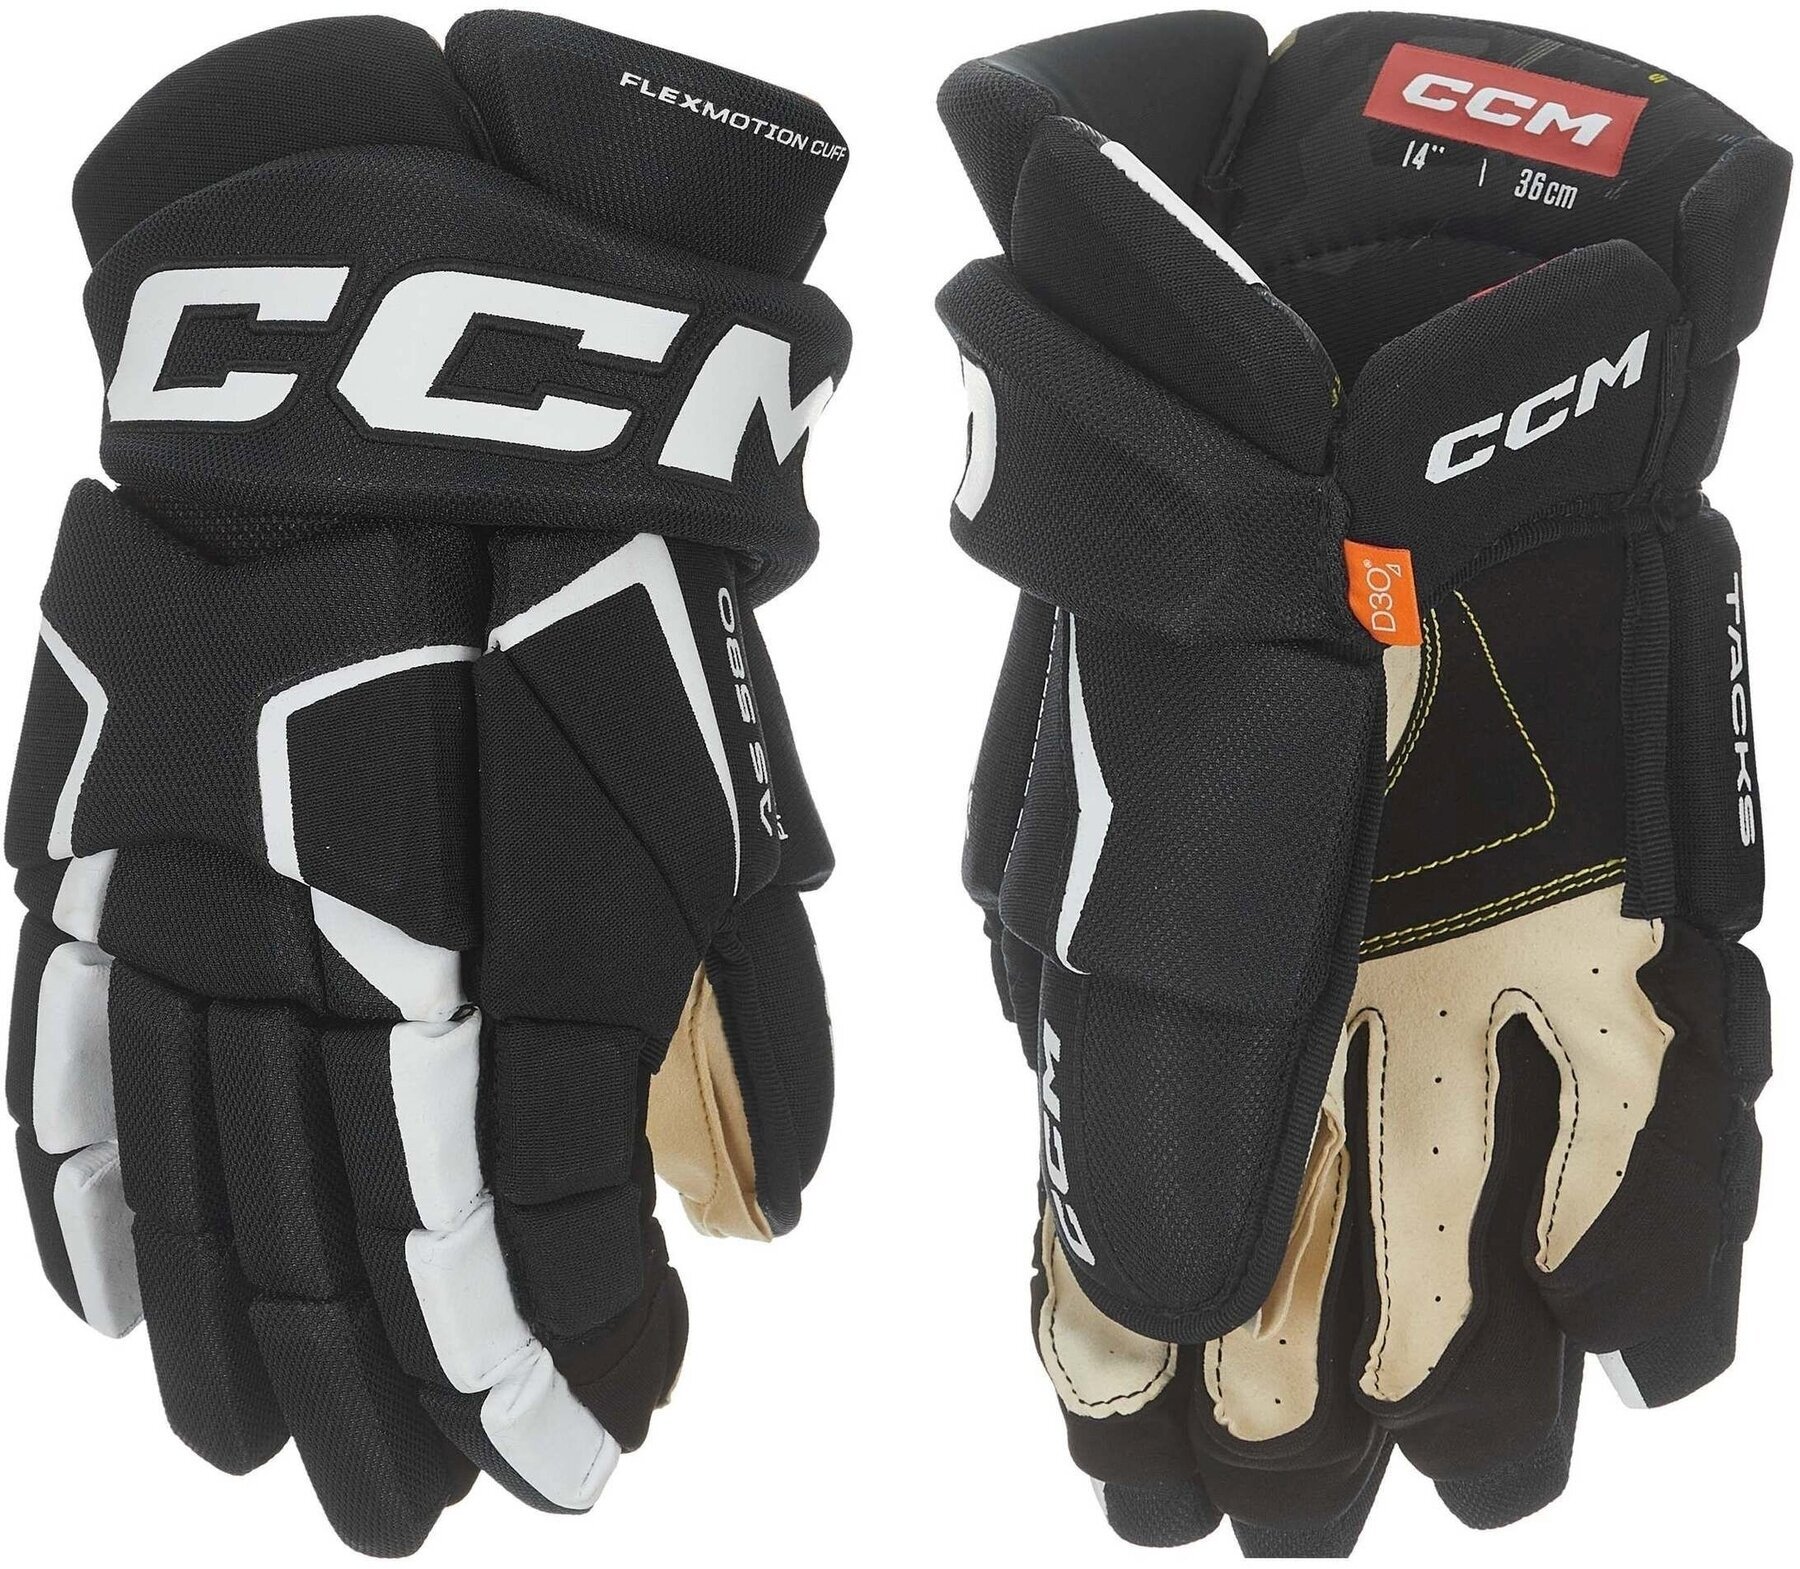 Hokejové rukavice CCM Tacks AS 580 SR 14 Black/White Hokejové rukavice